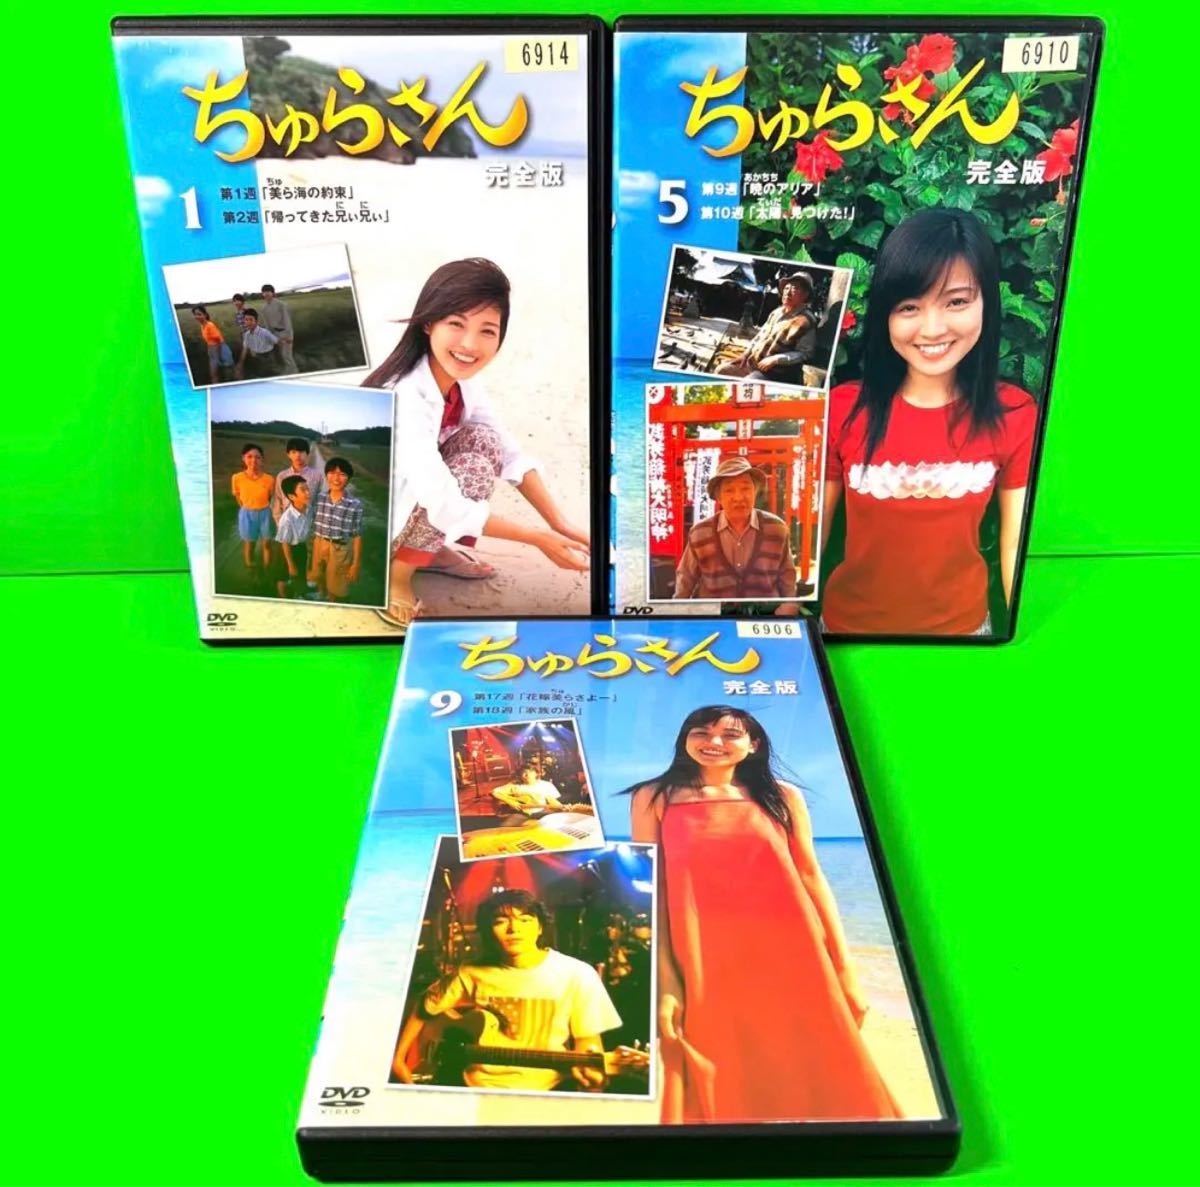 ちゅらさん 完全版 DVD-BOX〈13枚組〉